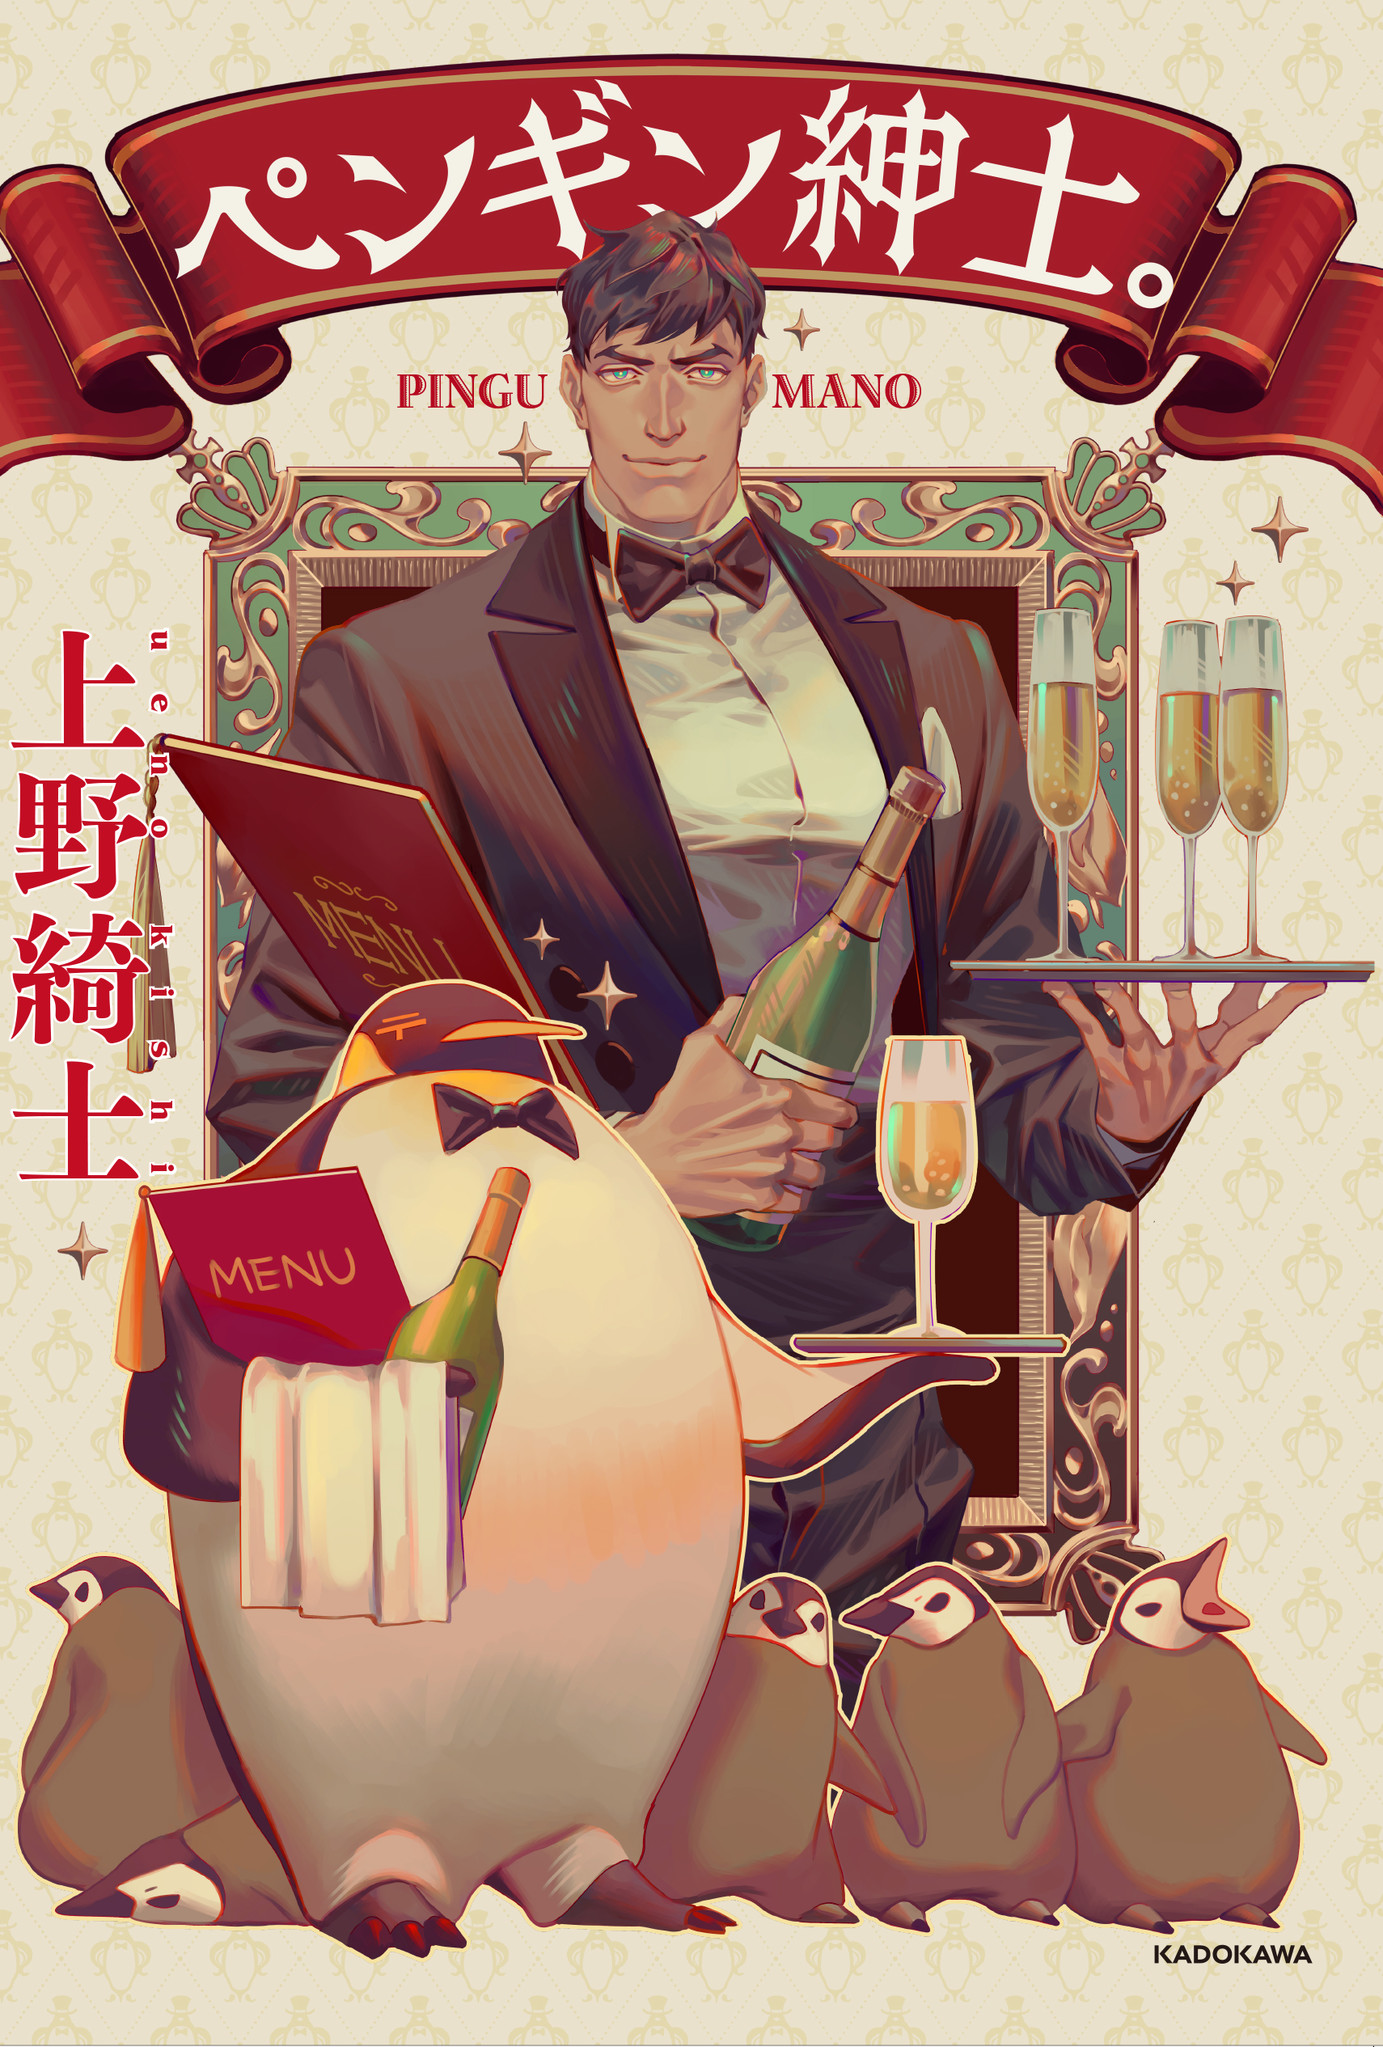 ペンギンをタキシード姿の紳士に擬人化 Bl要素もアリ な新感覚コミック ペンギン紳士 が2月６日 木 発売 株式会社kadokawaのプレスリリース